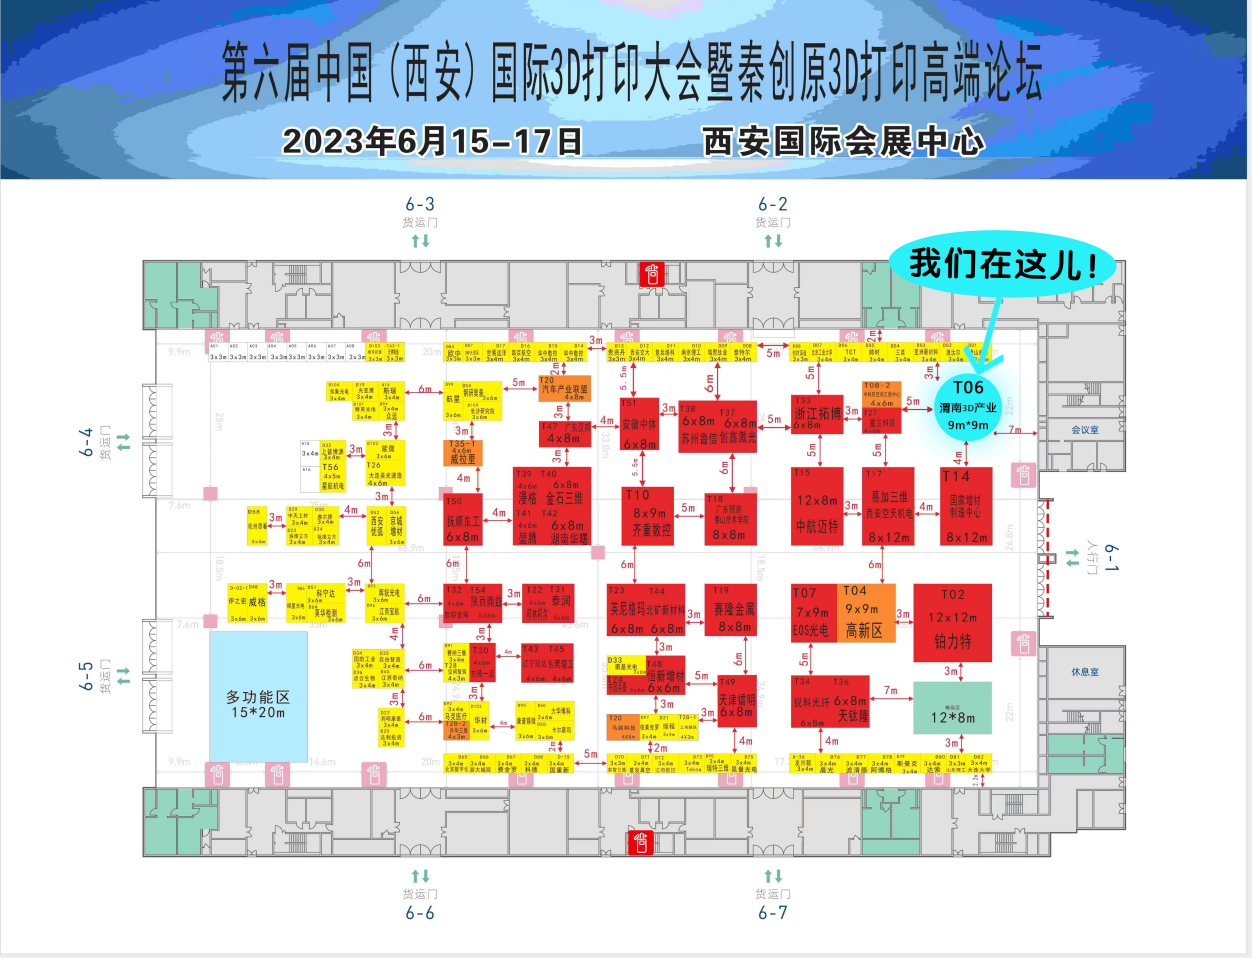 展会预告2023.6.15-17中国西安国际3D打印大会-非凡士期待您的莅临